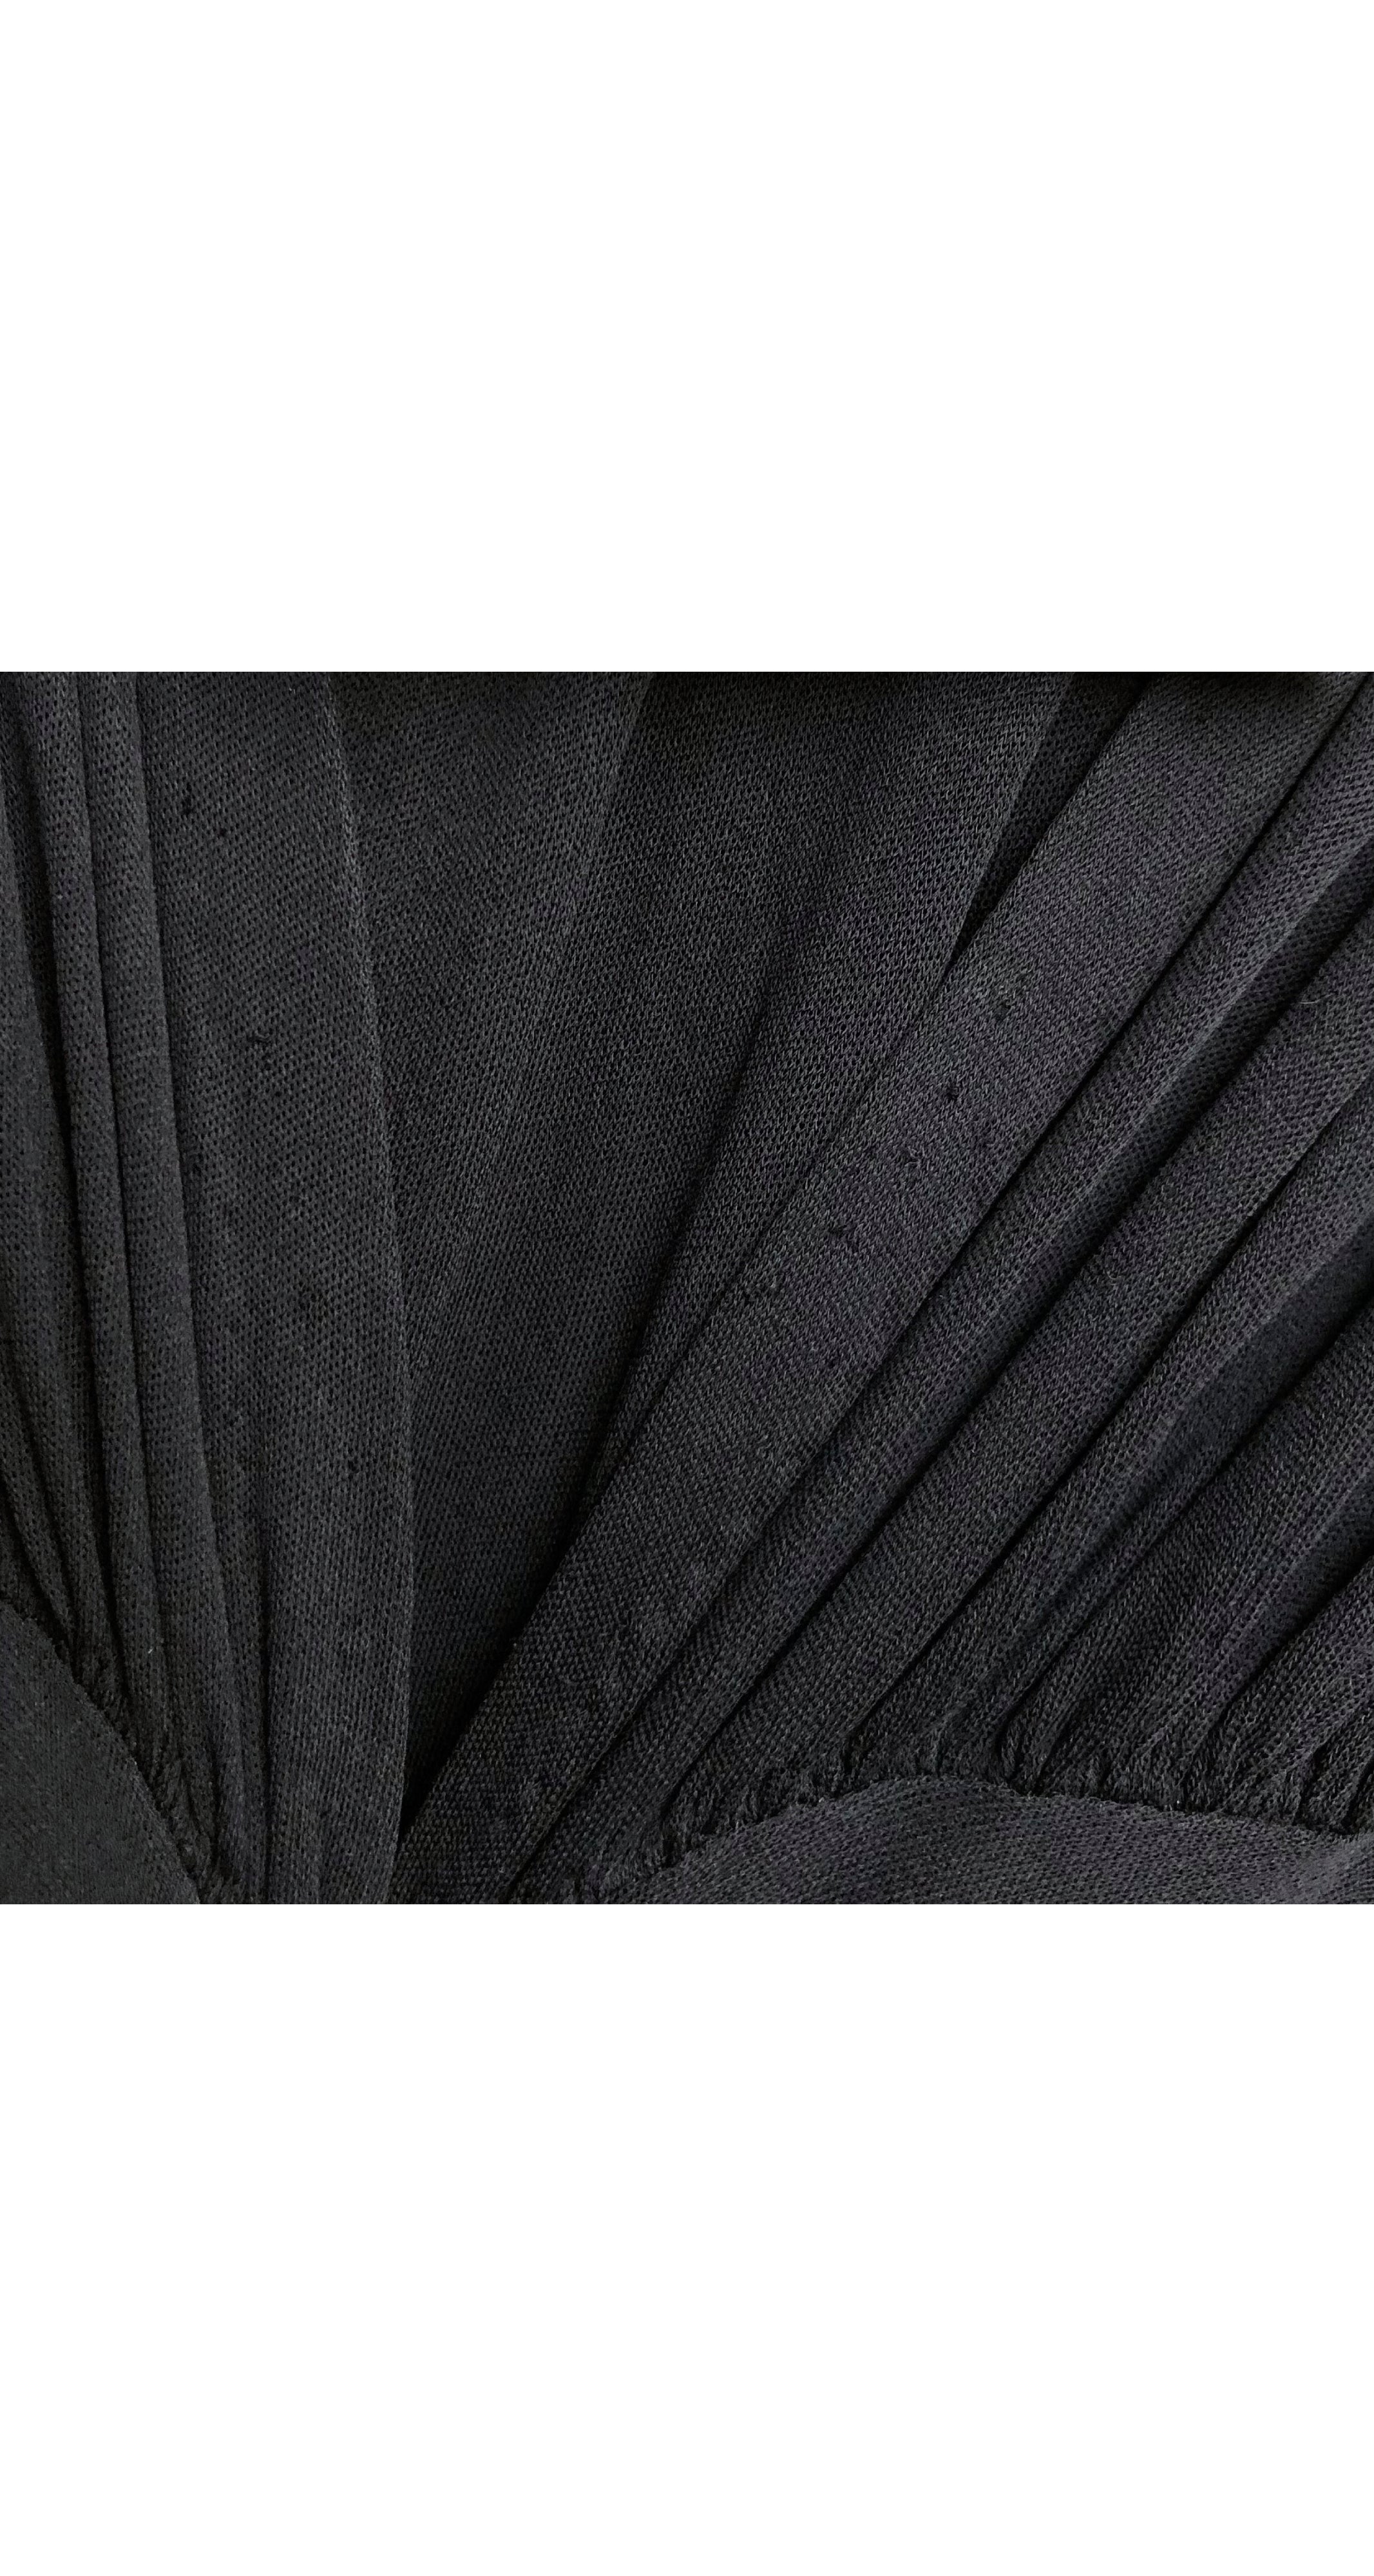 1940s Black Slinky Viscose Jersey Dress